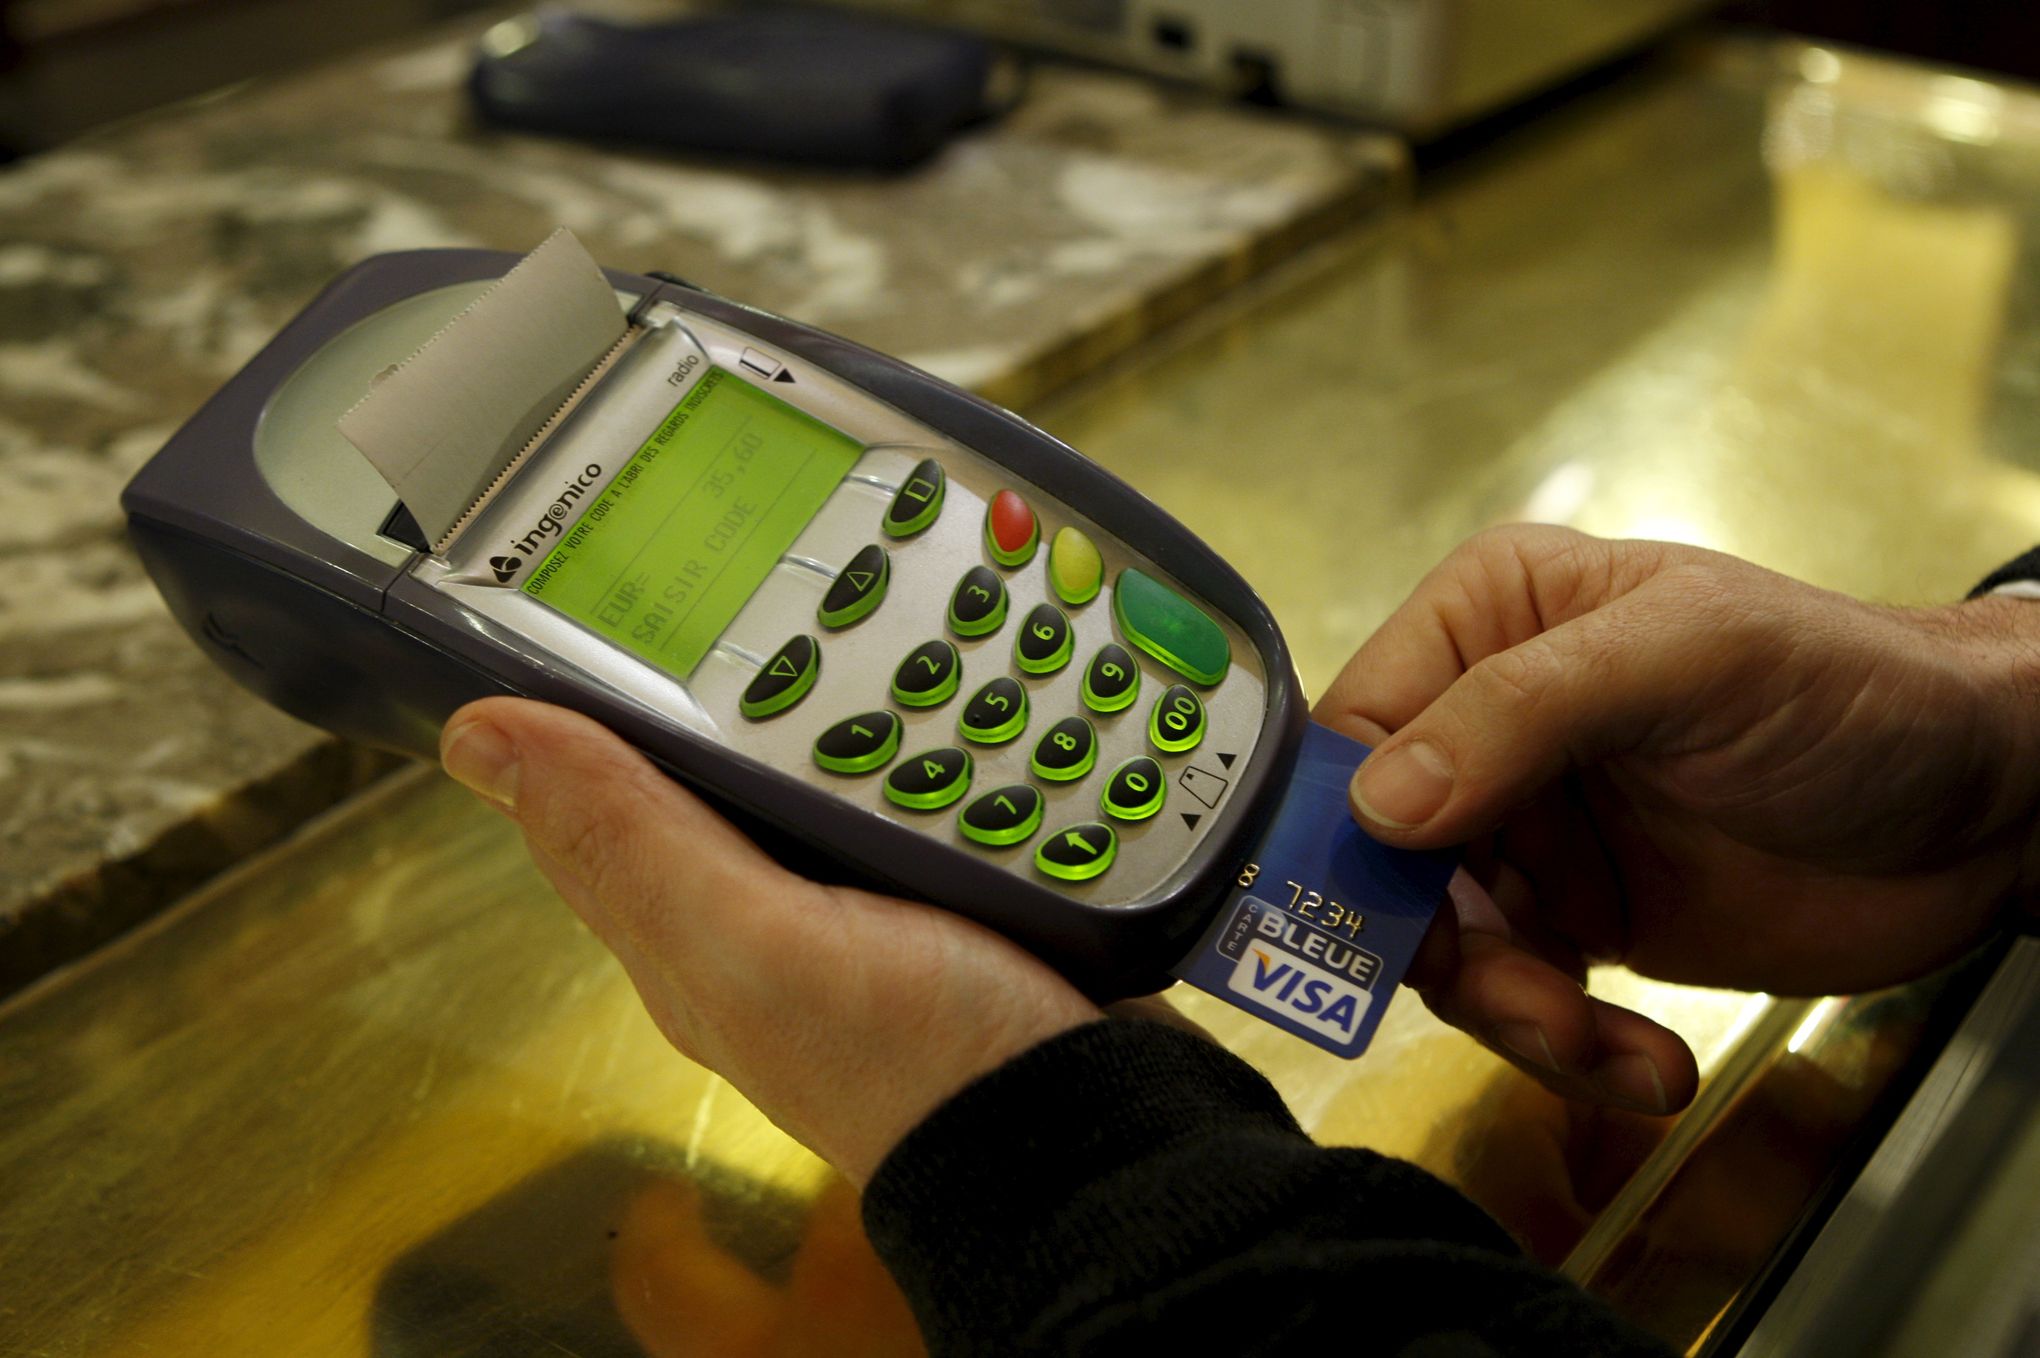 Les Français voudraient utiliser plus leur carte bancaire